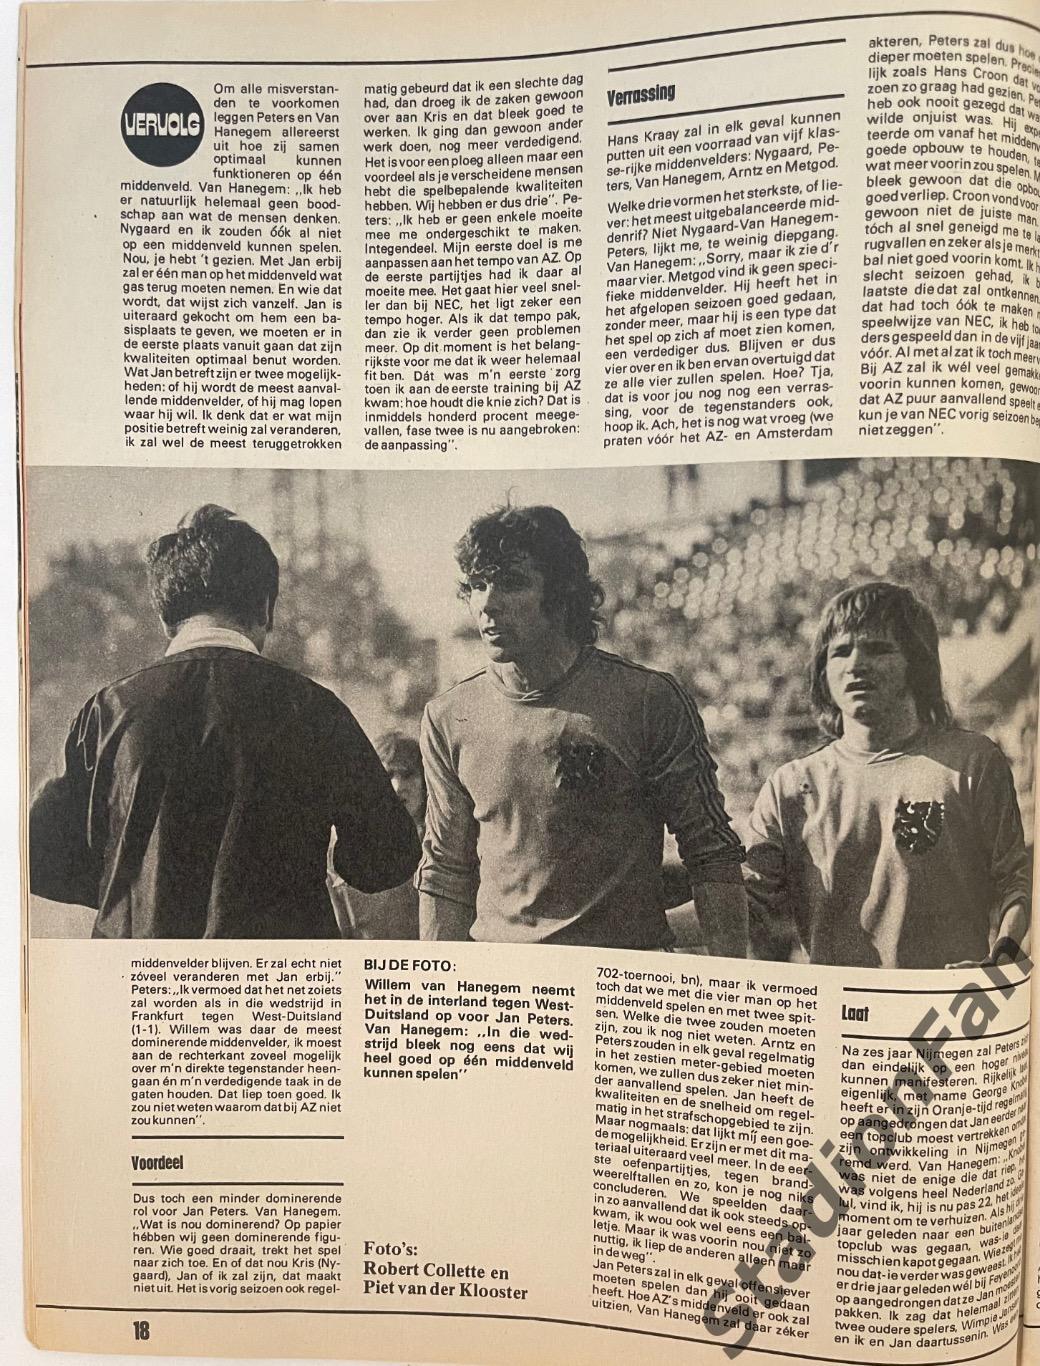 Журнал Voetbal nr.32 - 1977 год. 7